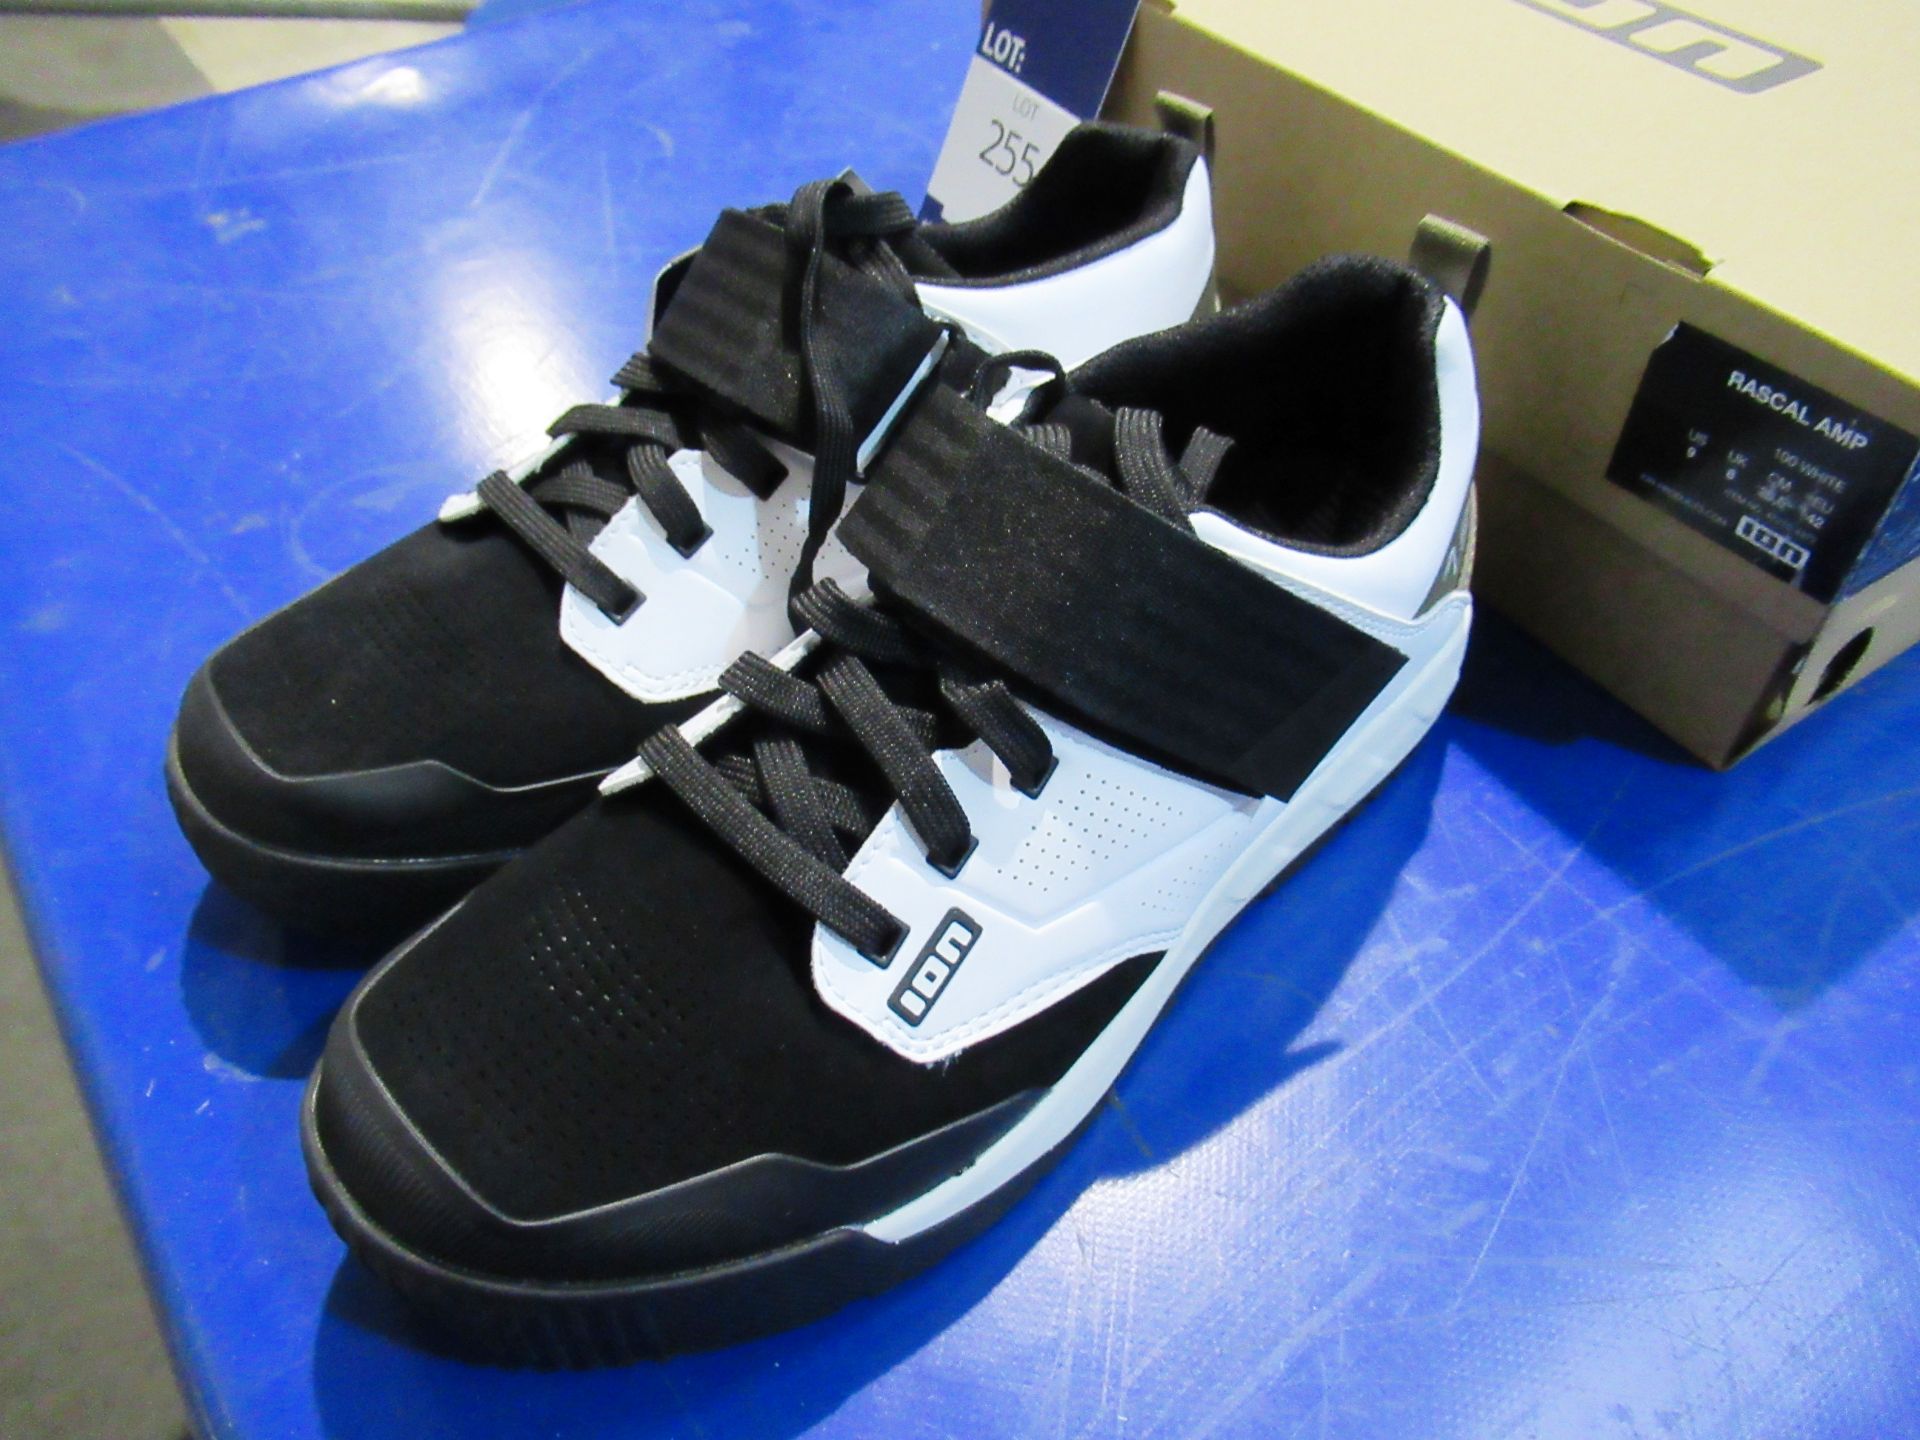 Ion Rascle AMP unisex cycle shoes, size 42 (UK size 8) (White & Black) RRP£144.95 - Image 2 of 4